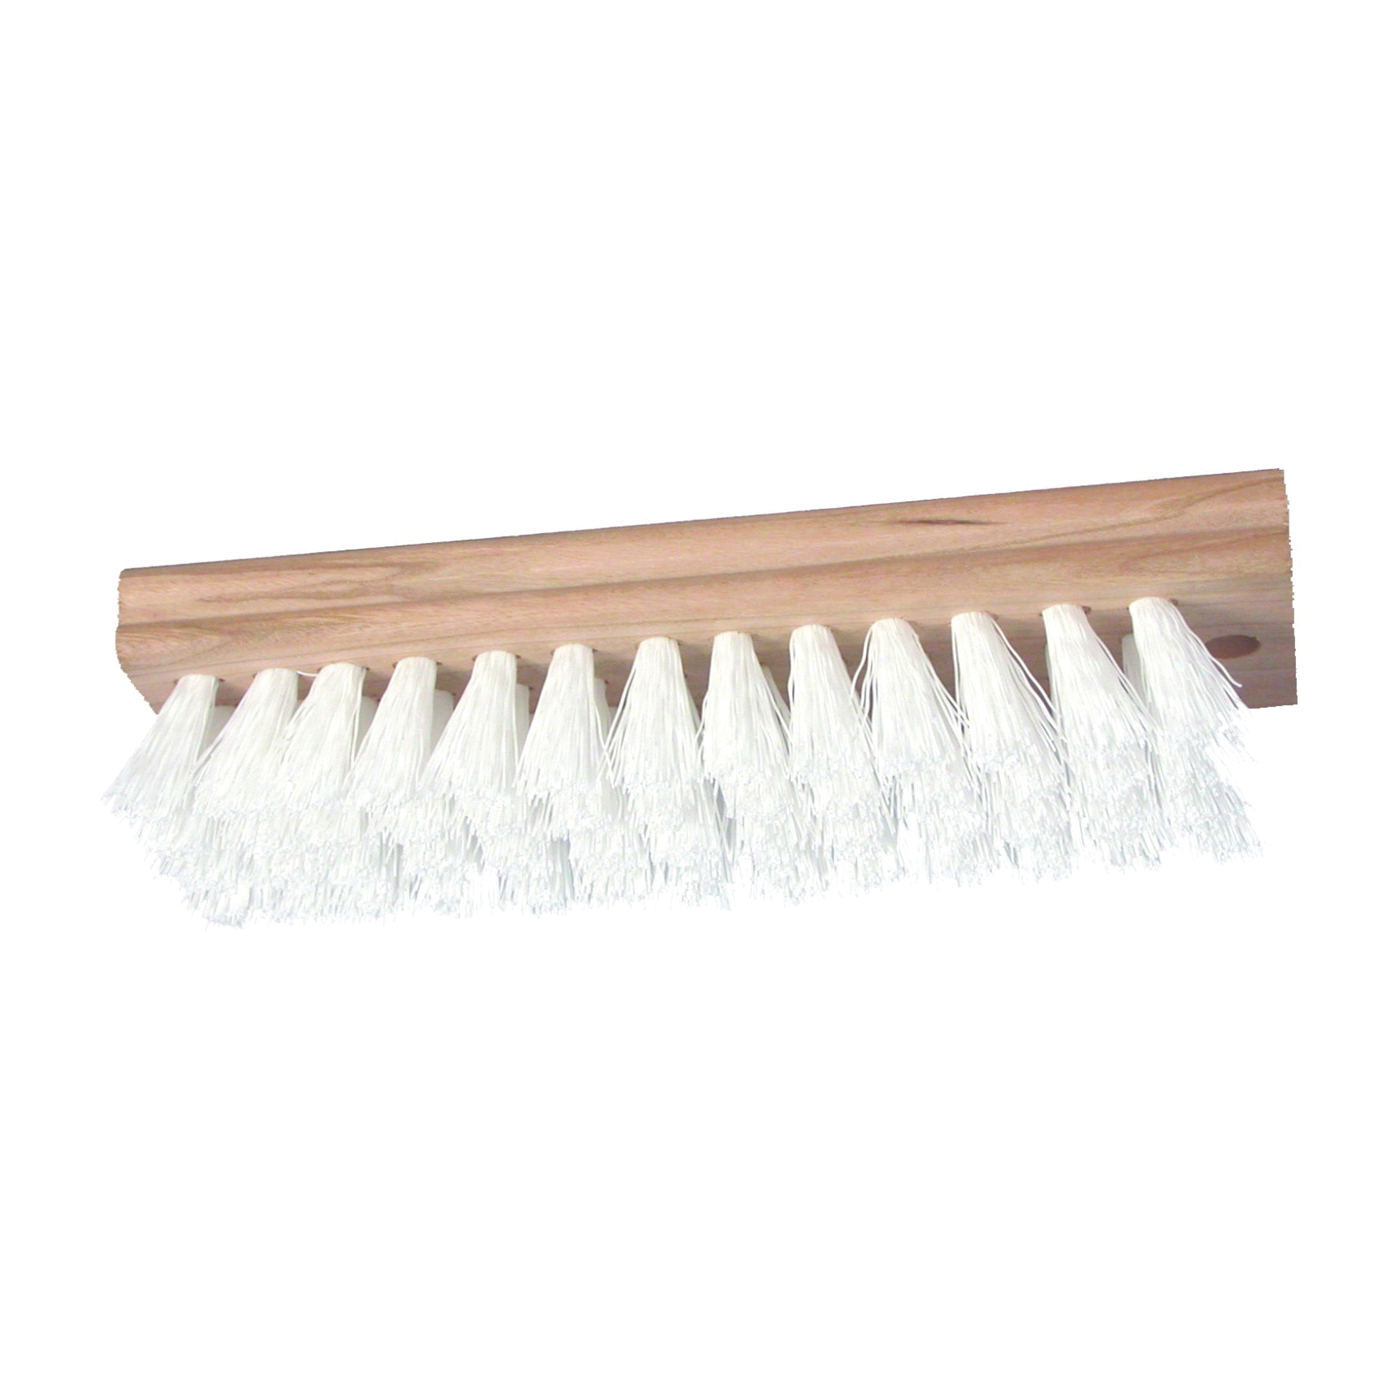 460-48 Scrubber Brush, 1 in L Trim